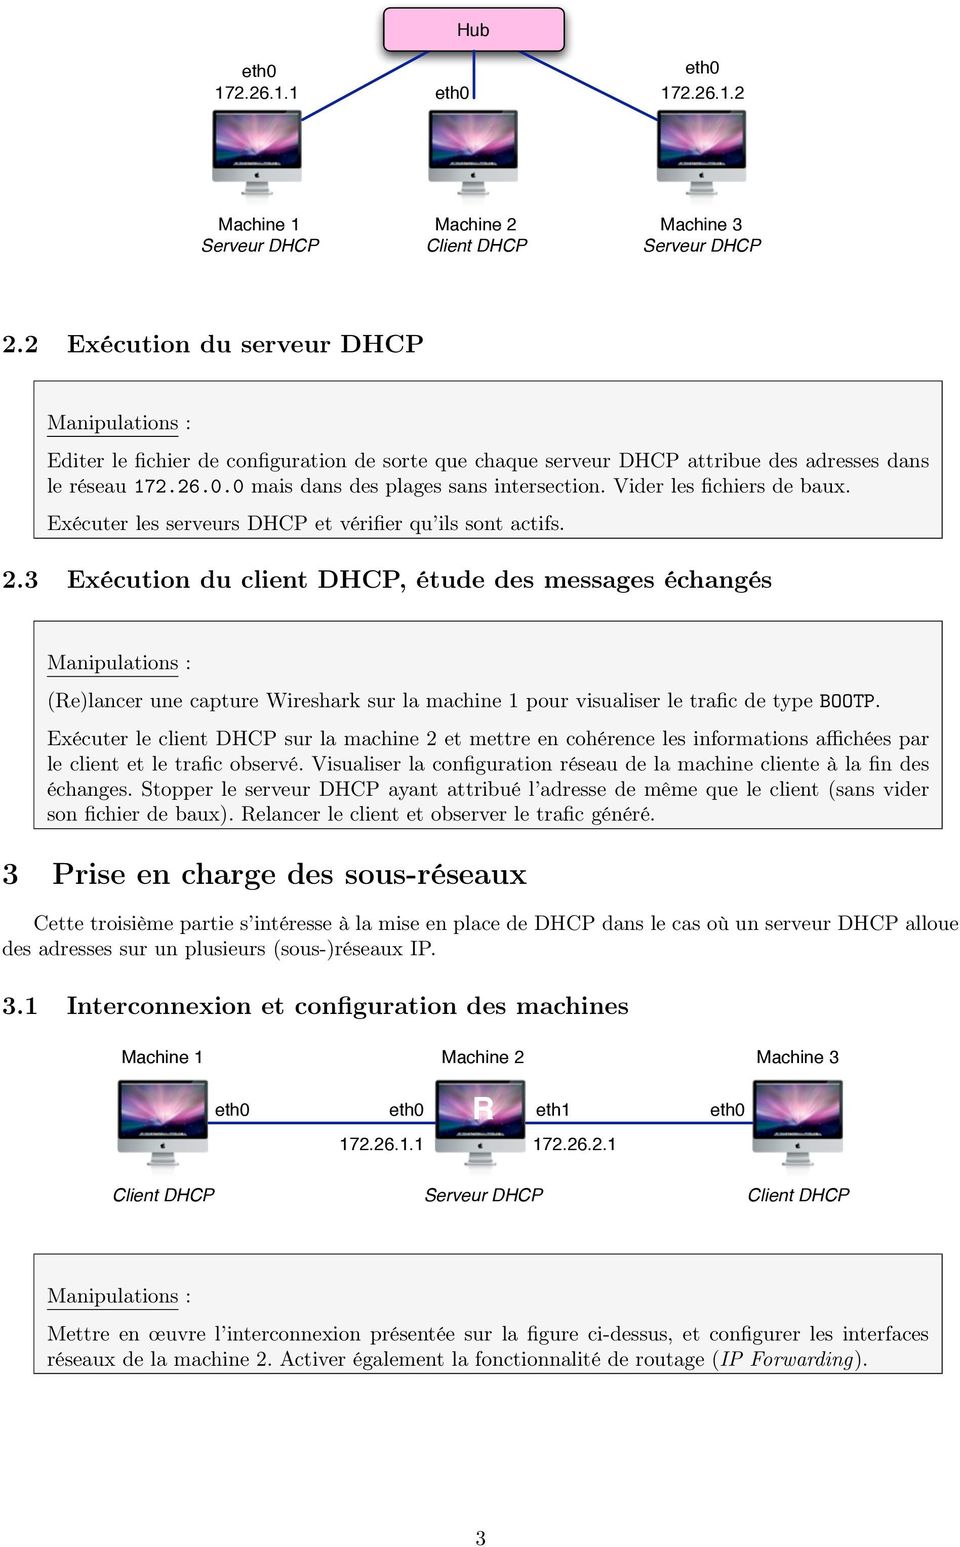 3 Exécution du client DHCP, étude des messages échangés (Re)lancer une capture Wireshark sur la machine 1 pour visualiser le trafic de type BOOTP.